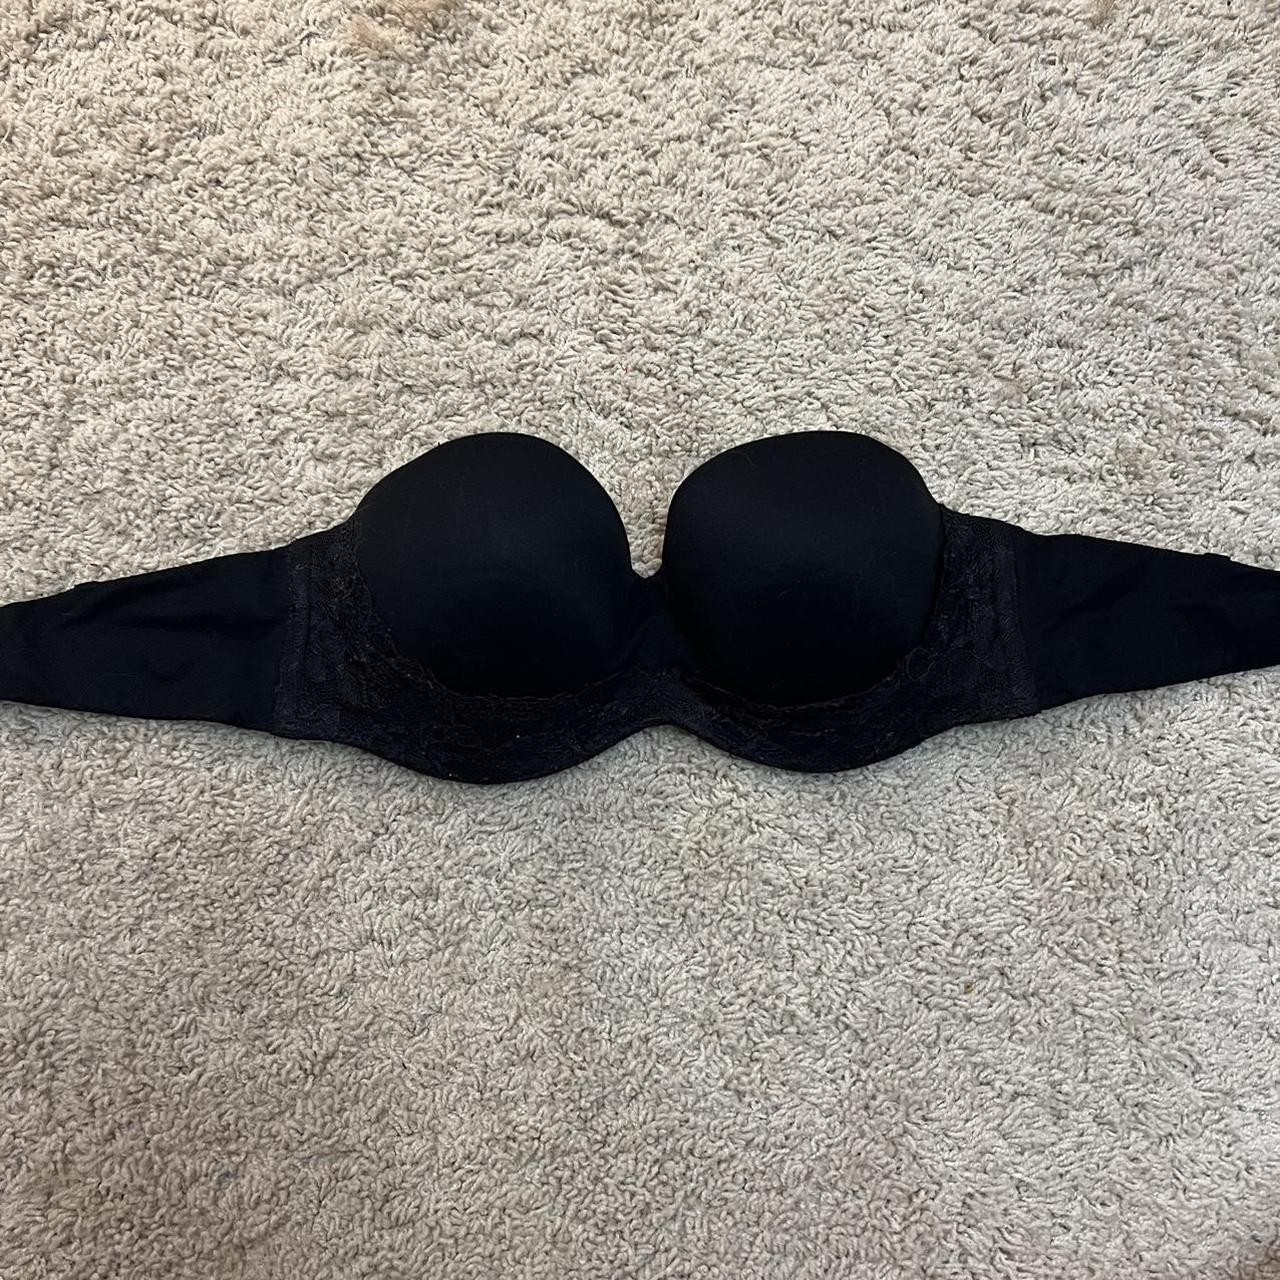 Victorias secret black strapless bra Still in great - Depop